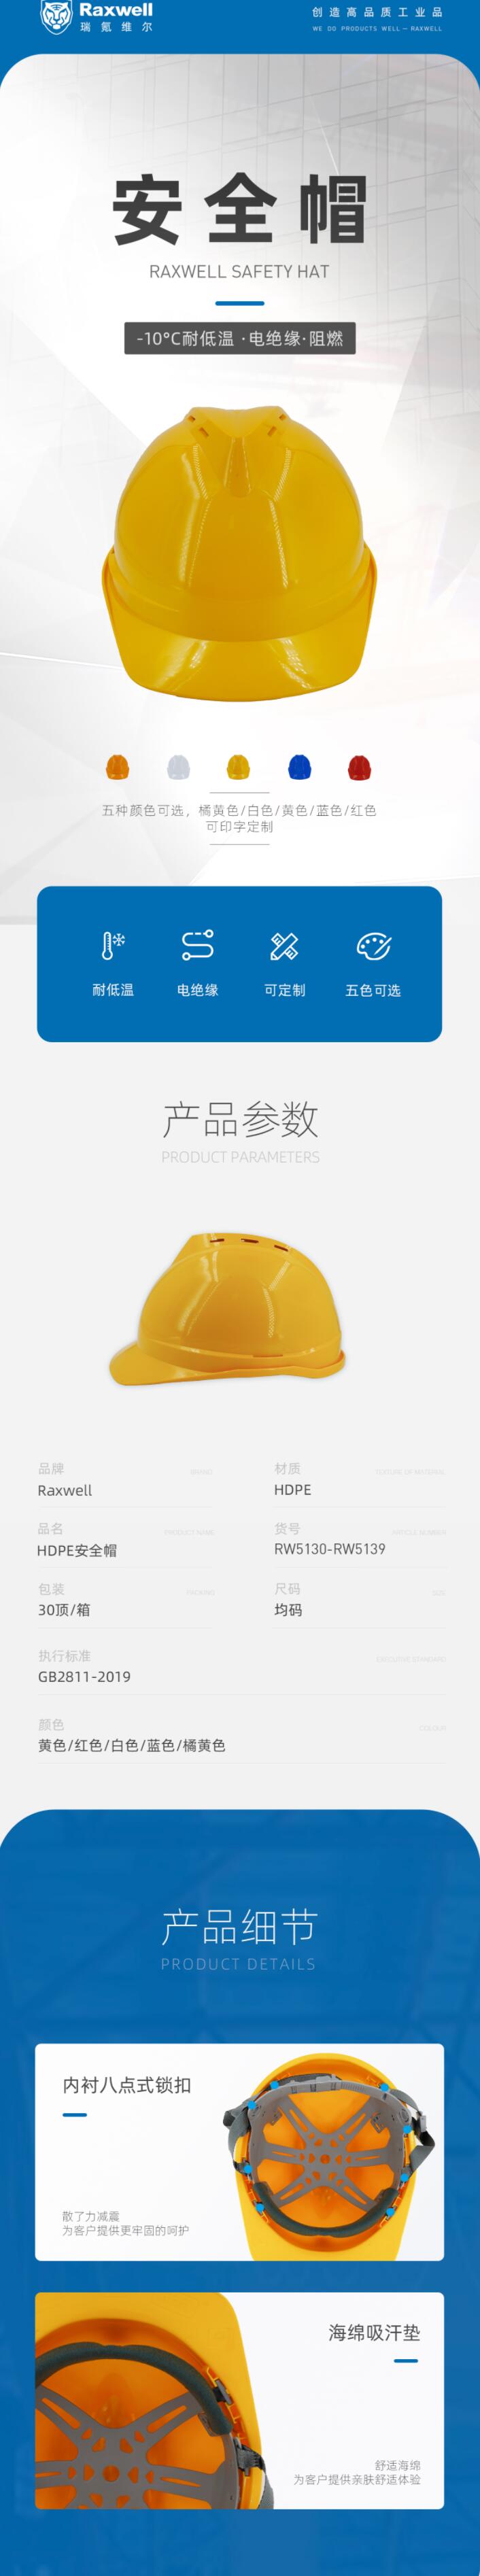 瑞氪维尔RW5136 HDPE无透气孔安全帽图片